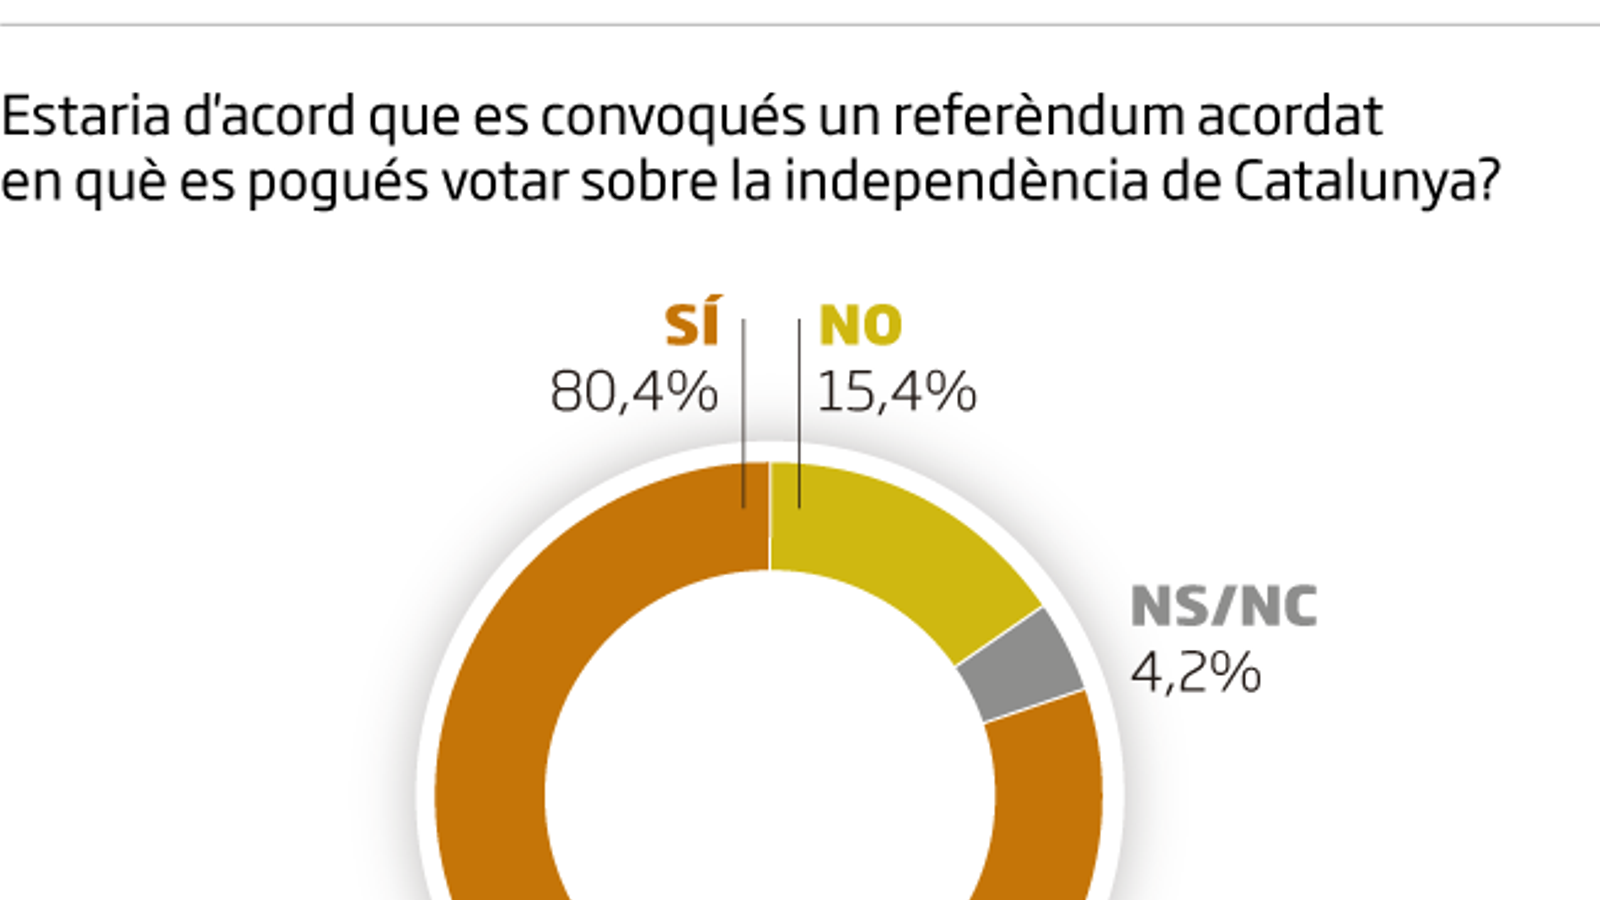 El 80% dels catalans són partidaris d’un referèndum acordat